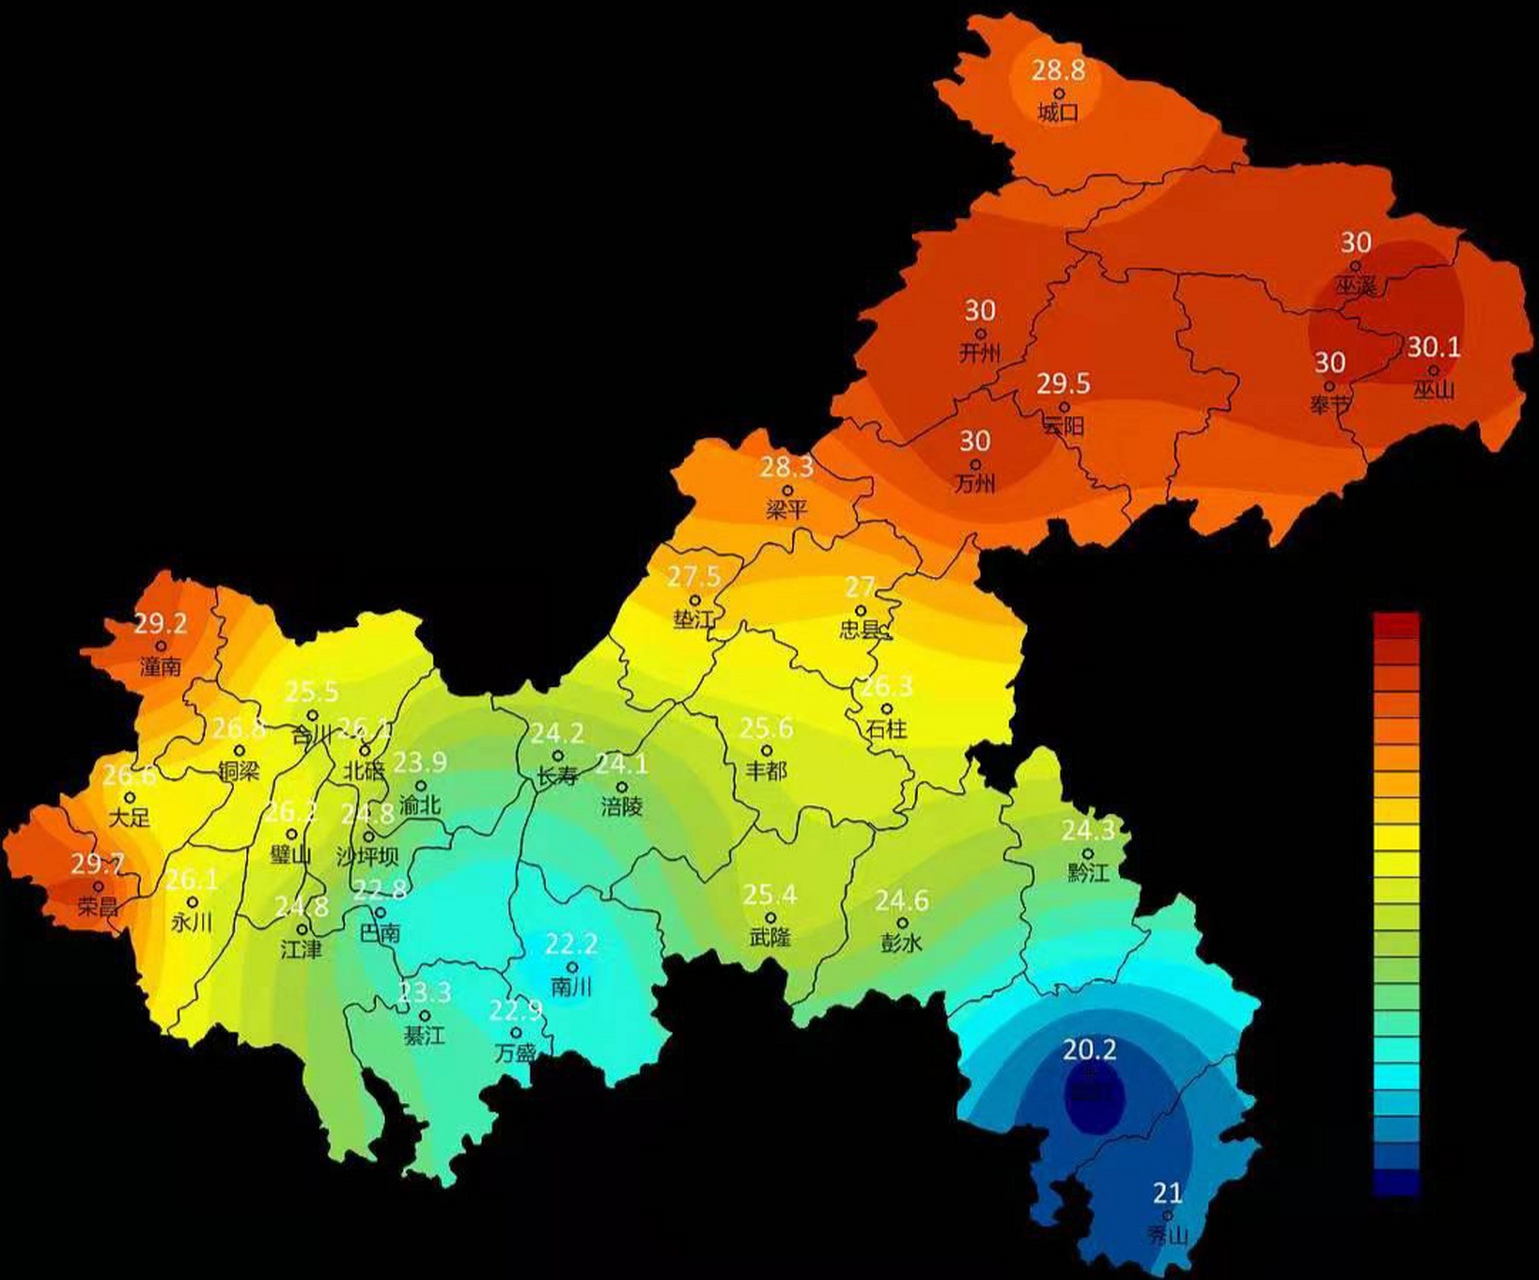 看地图,猜城市 图中的两个城市轮廓有何异同? #重庆# #榆林# #陕西